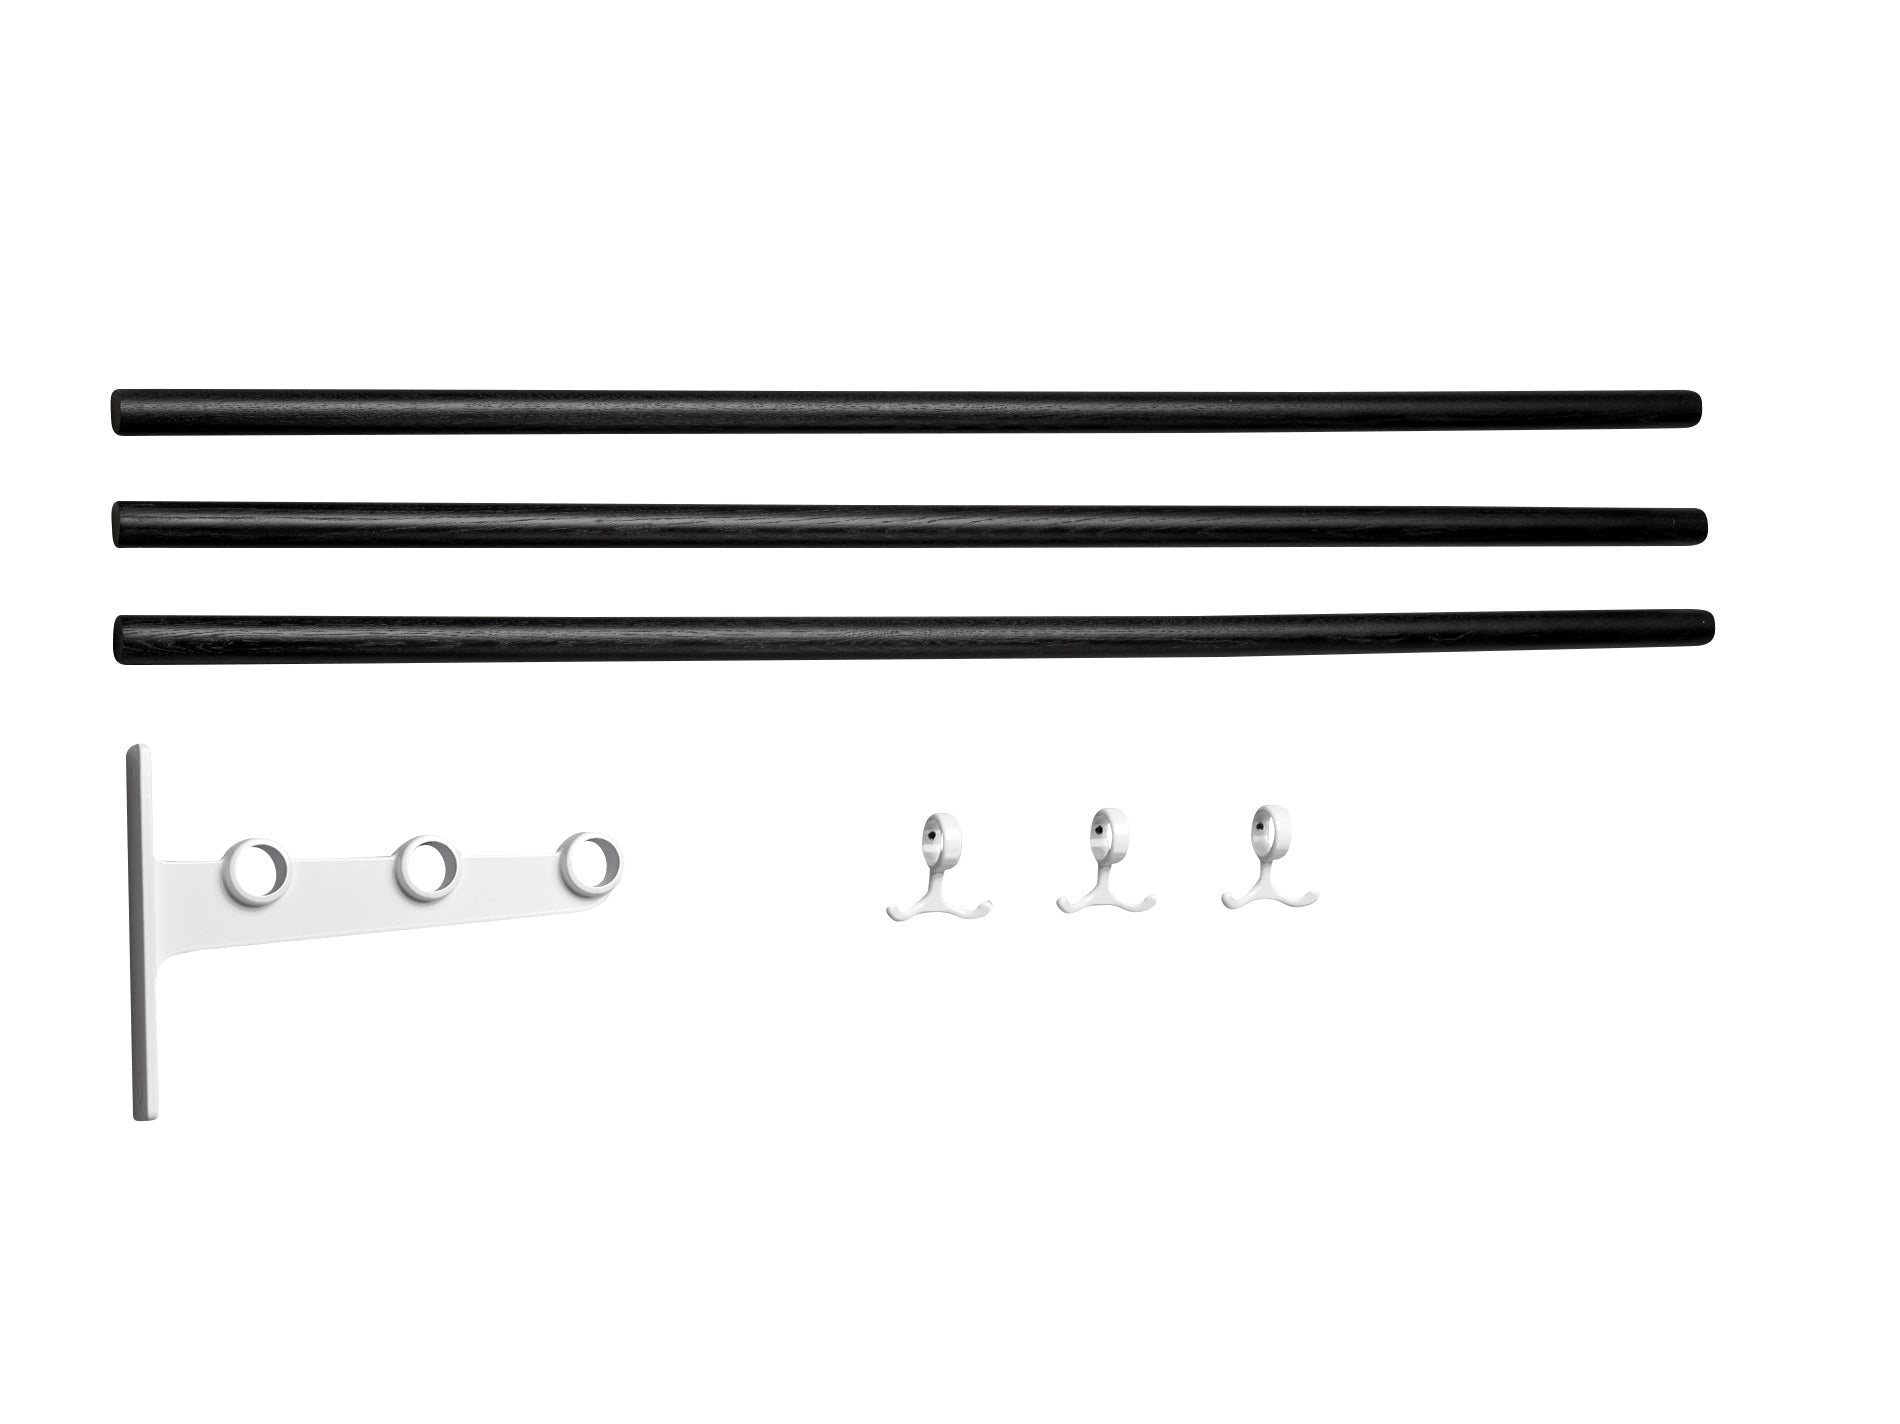 Essem Design -Erweiterungsteil für Nostalgi Hut -Regal/Schuh Rack Eiche/Aluminium, schwarz gefärbt/weiß